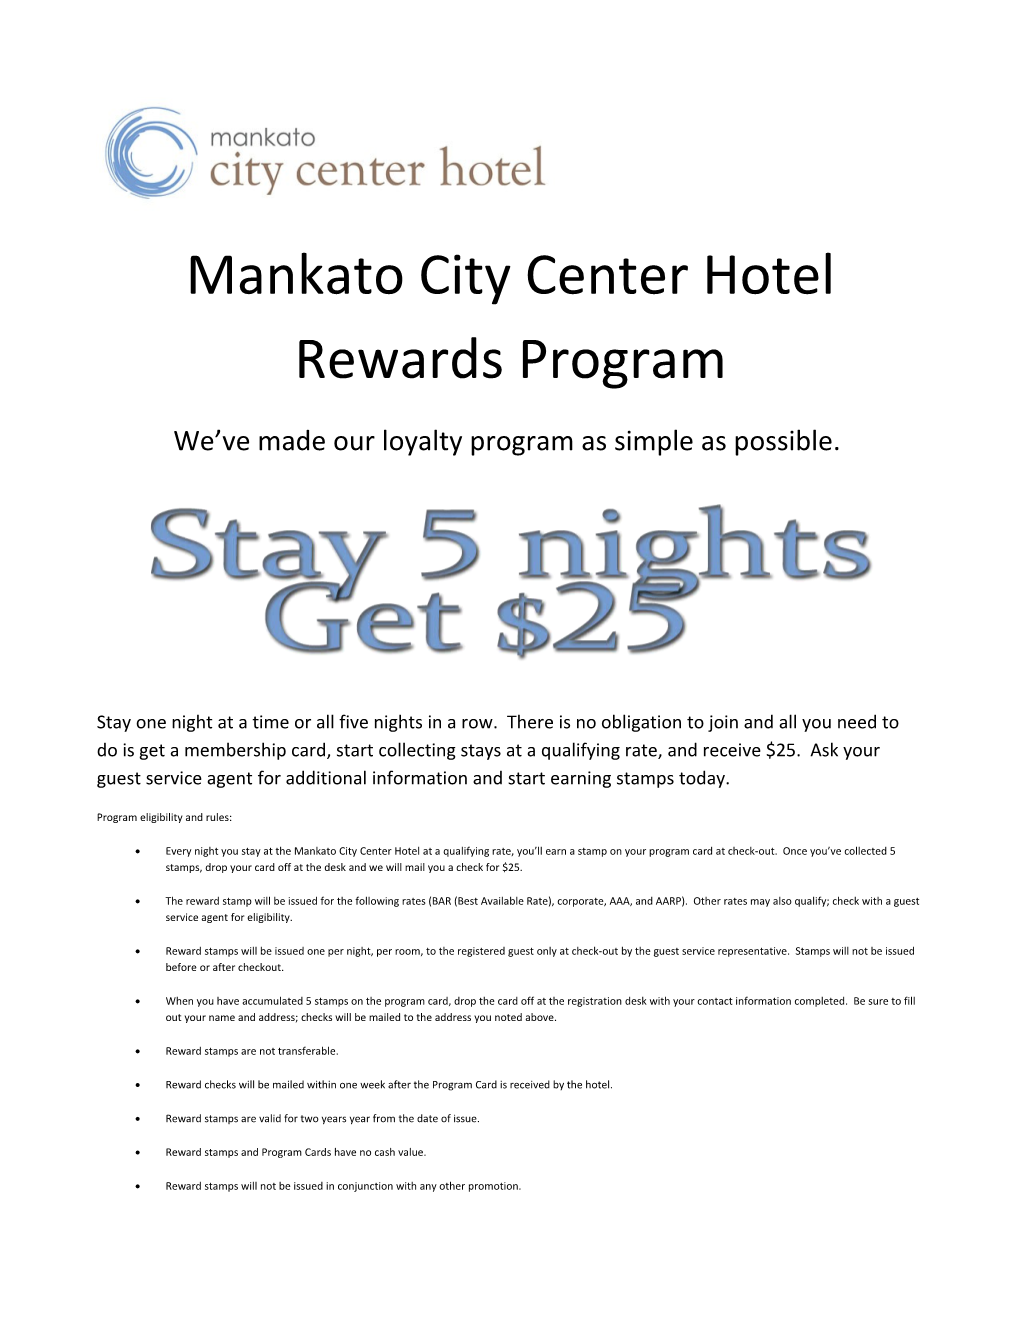 Mankato City Center Hotel Rewards Program